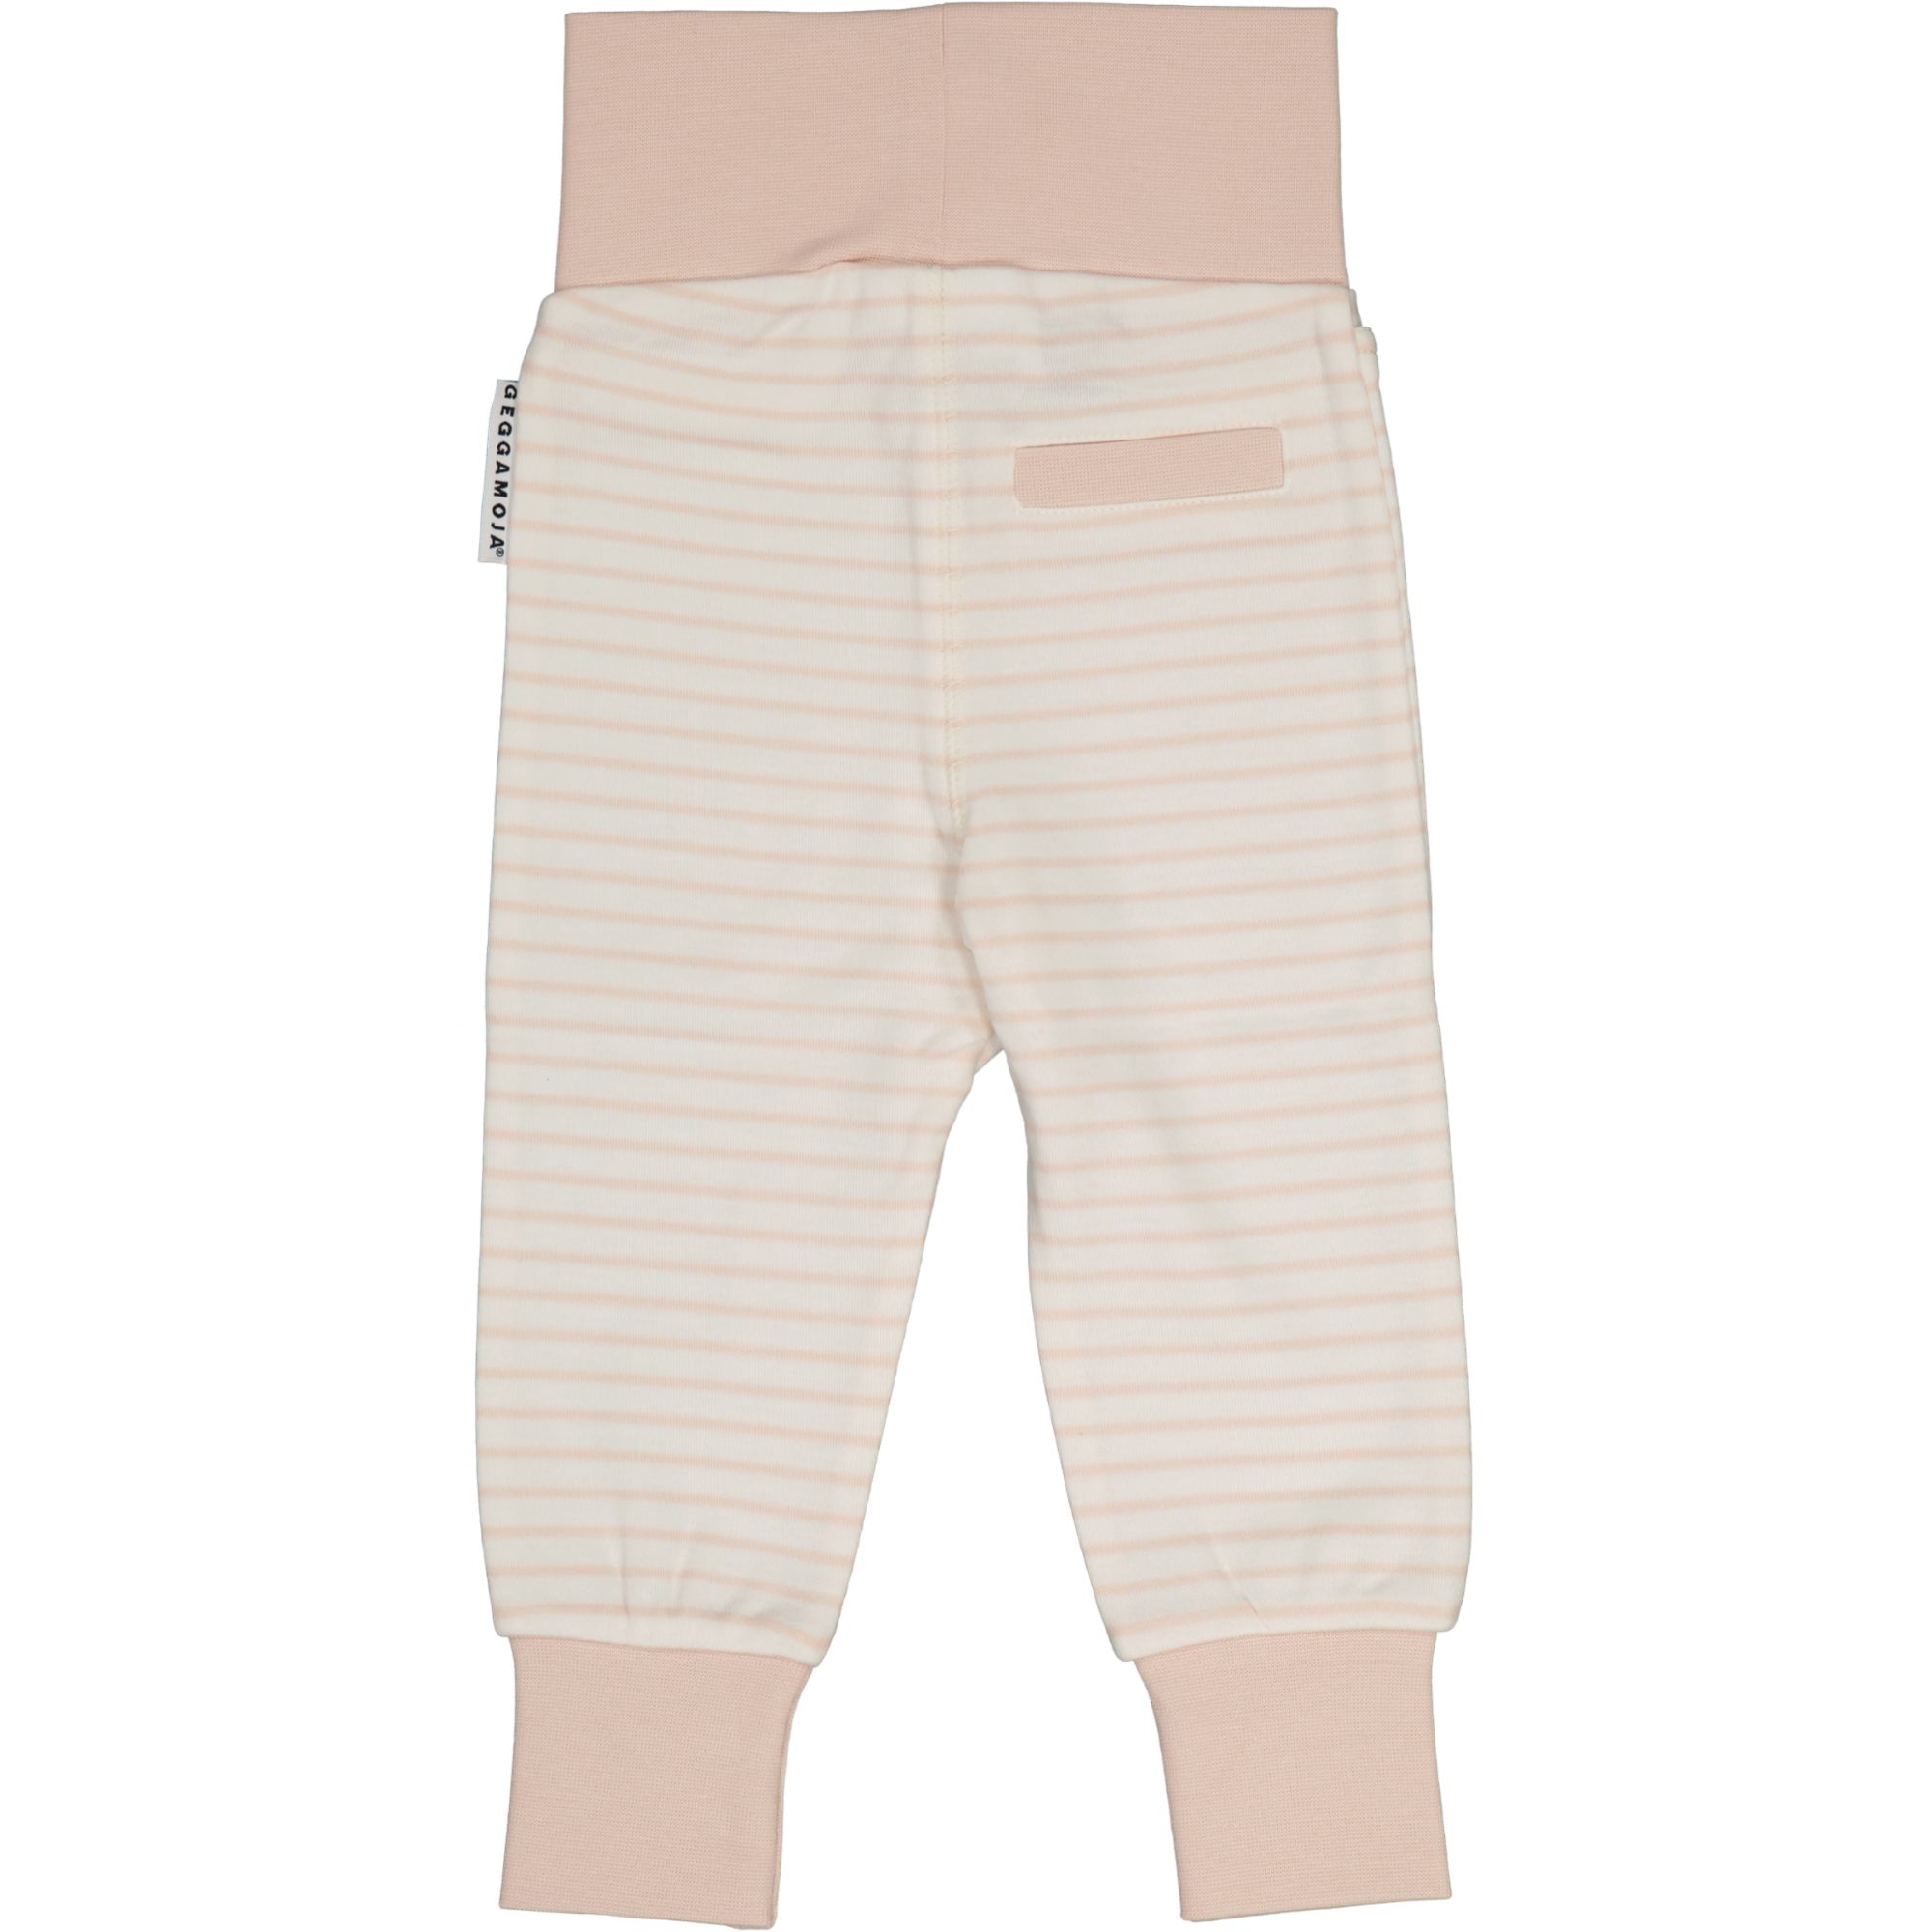 Vauvan housut L.vaaleanpunainen/offvalkoinen